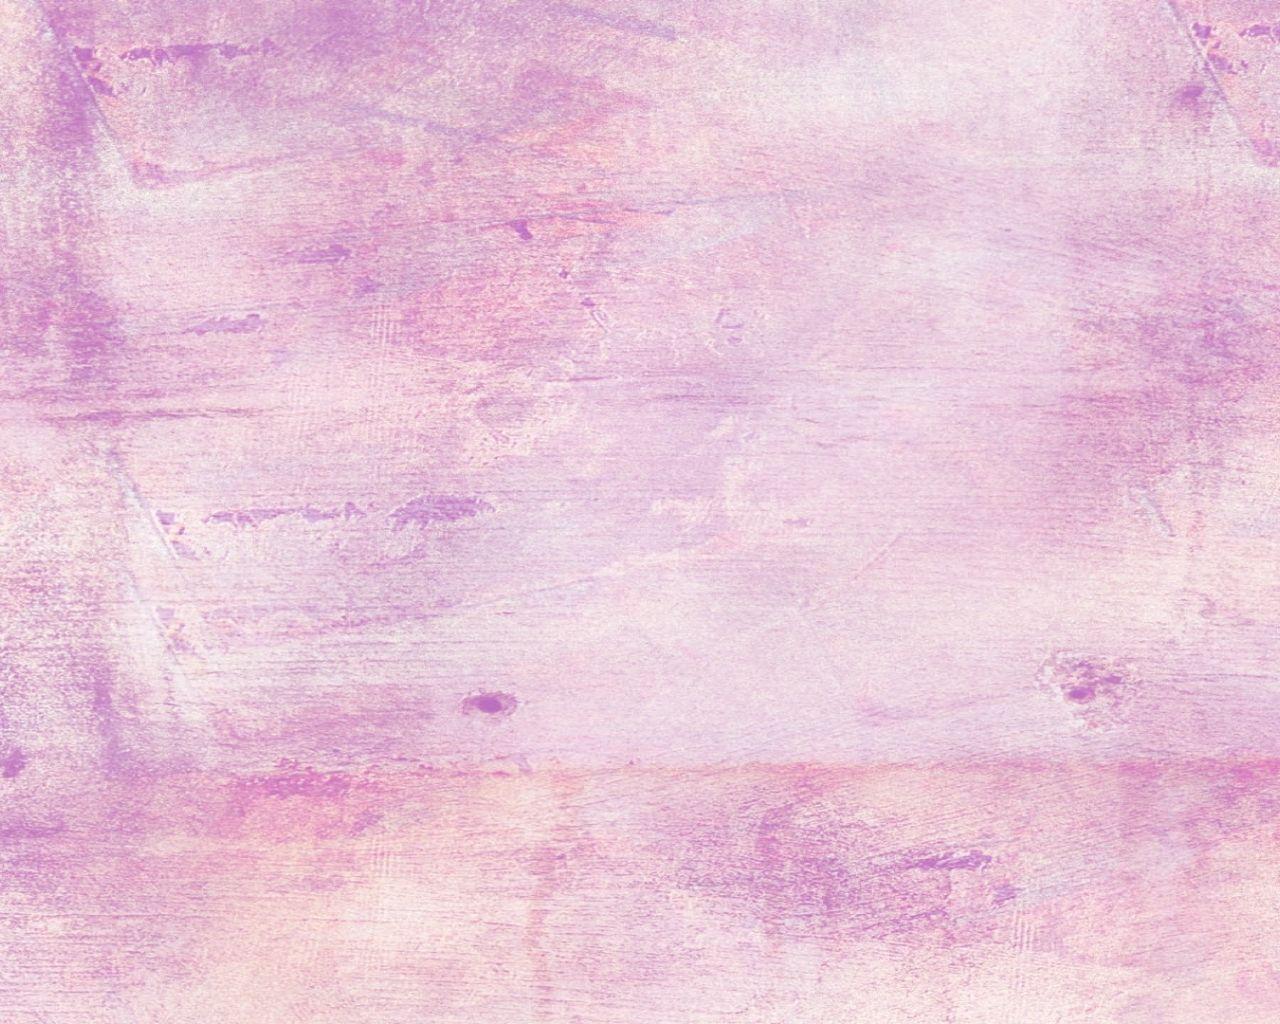 Tận hưởng bầu không khí lãng mạn với Light Purple Desktop Wallpapers. Với tông màu tím nhạt đặc trưng, chúng sẽ tạo cho bạn một không gian làm việc thư giãn và ấm áp. Hãy cùng trải nghiệm trọn vẹn cảm giác này.